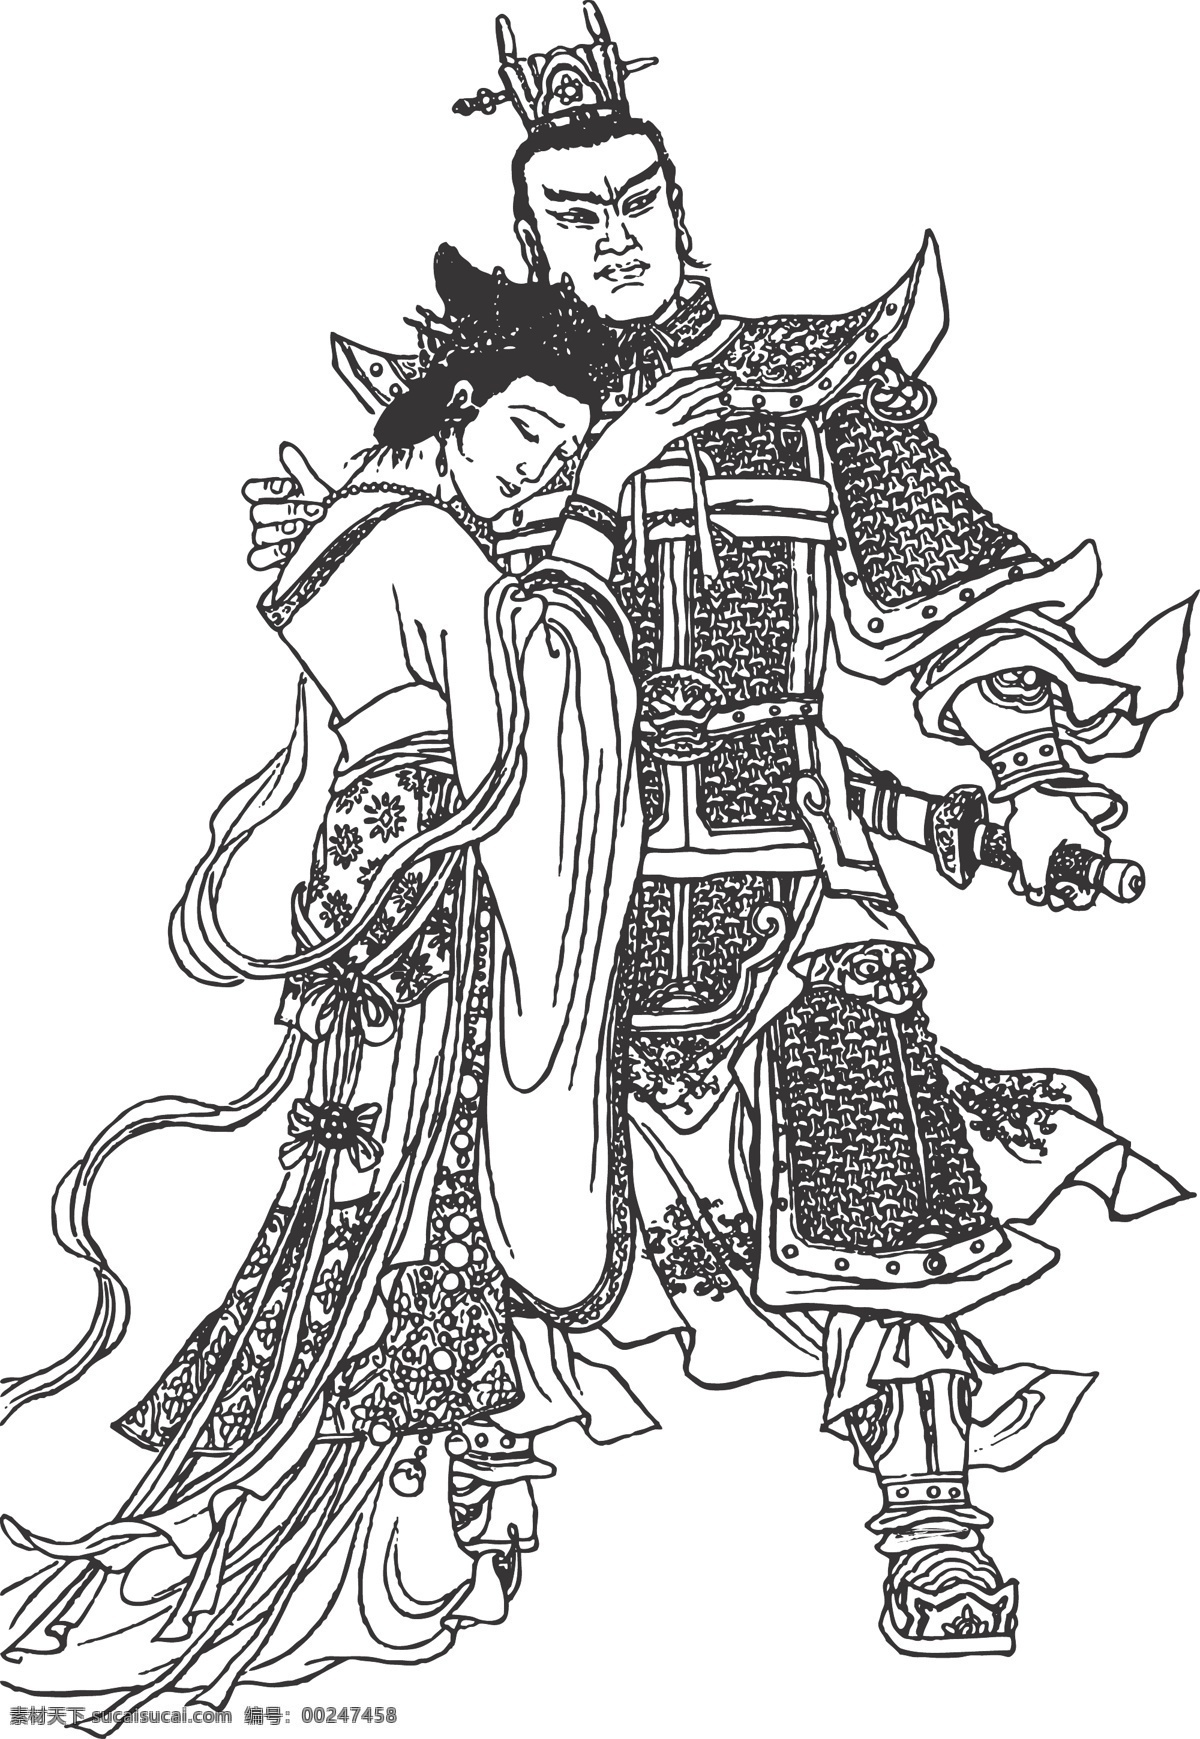 吕布 线条 传统 民俗 装饰 人物 武将 矢量 插画 白描 人物图库 男性男人